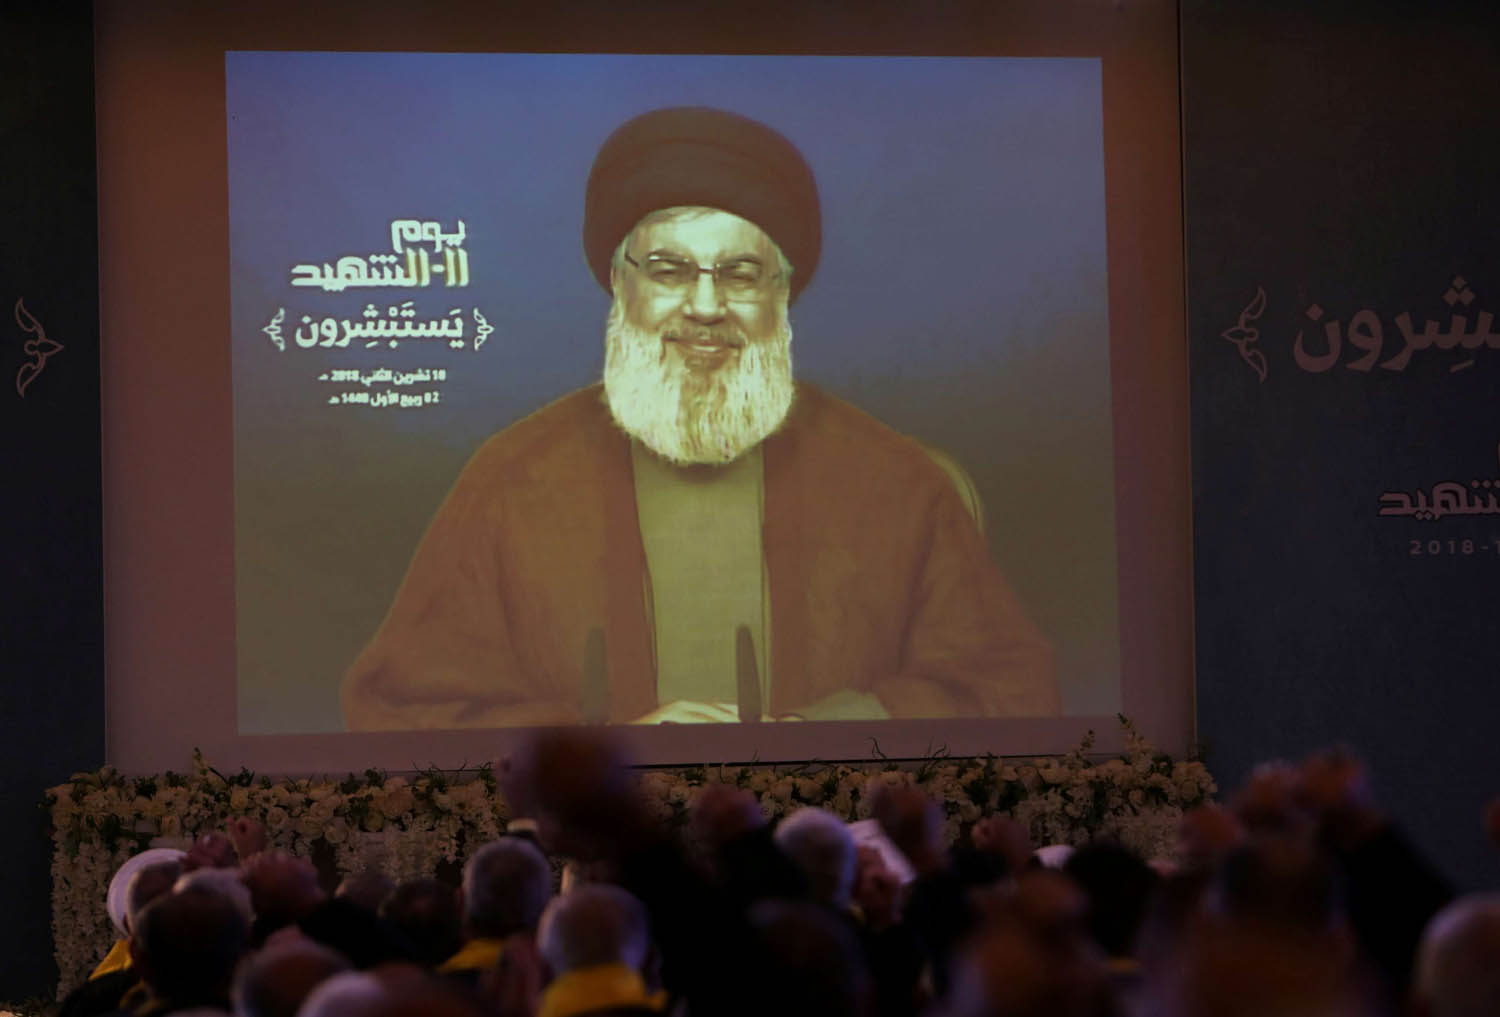 زعيم حزب الله حسن نصر الله يتحدث من خلال تسجيل مصور إلى مؤيديه